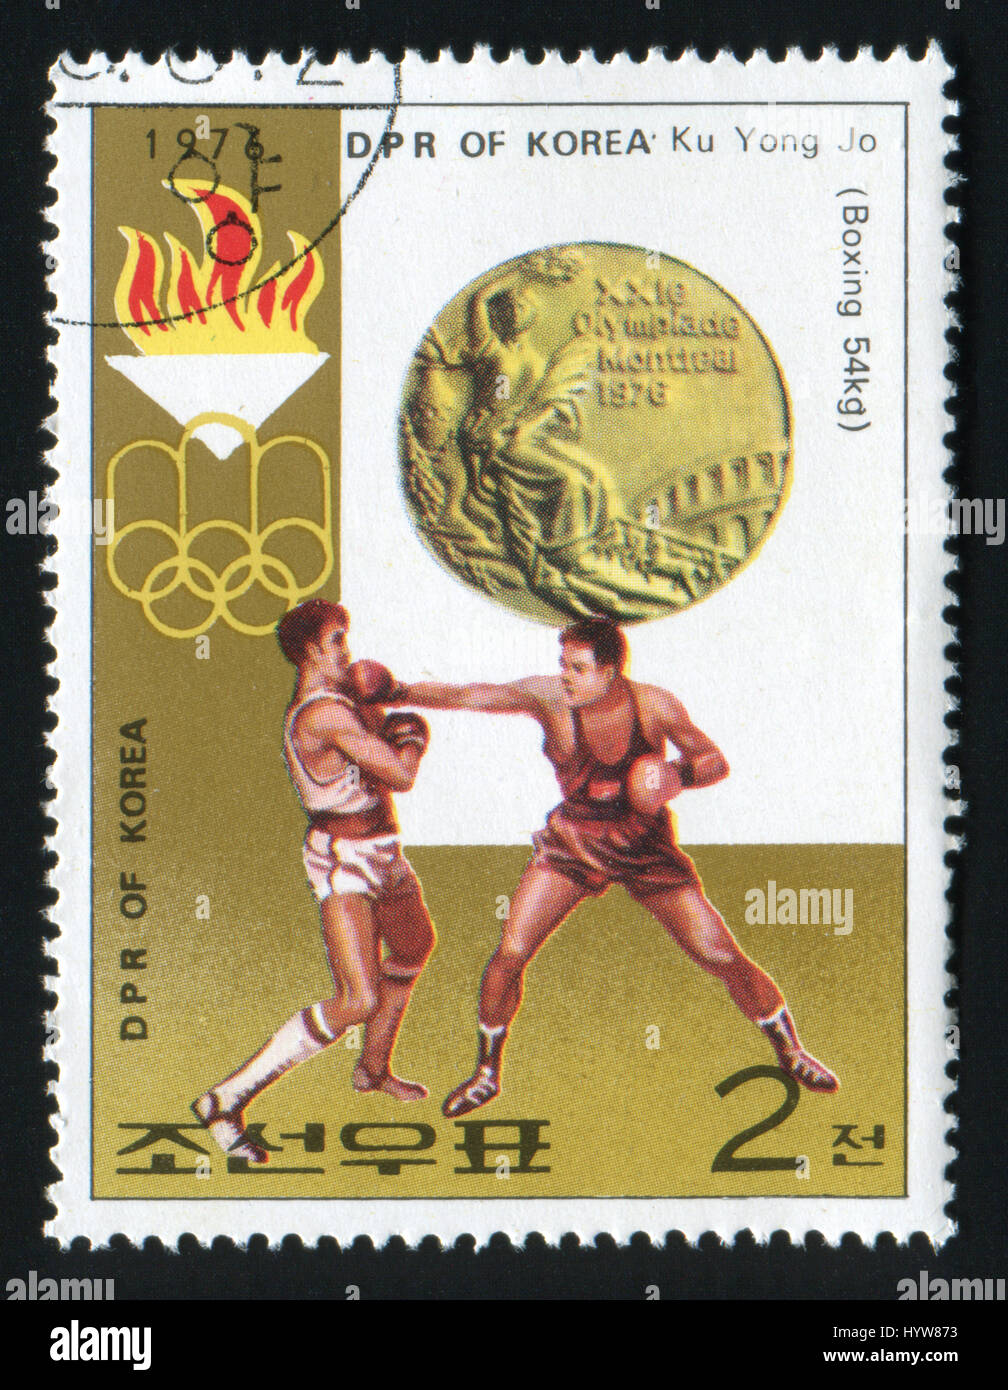 DPR KOREA - CIRCA 1973: Eine Briefmarke gedruckt in Nordkorea, zeigt Spiele der XXI Olympiade Boxen Ku Yong Jo, Serie, ca. 1976 Stockfoto